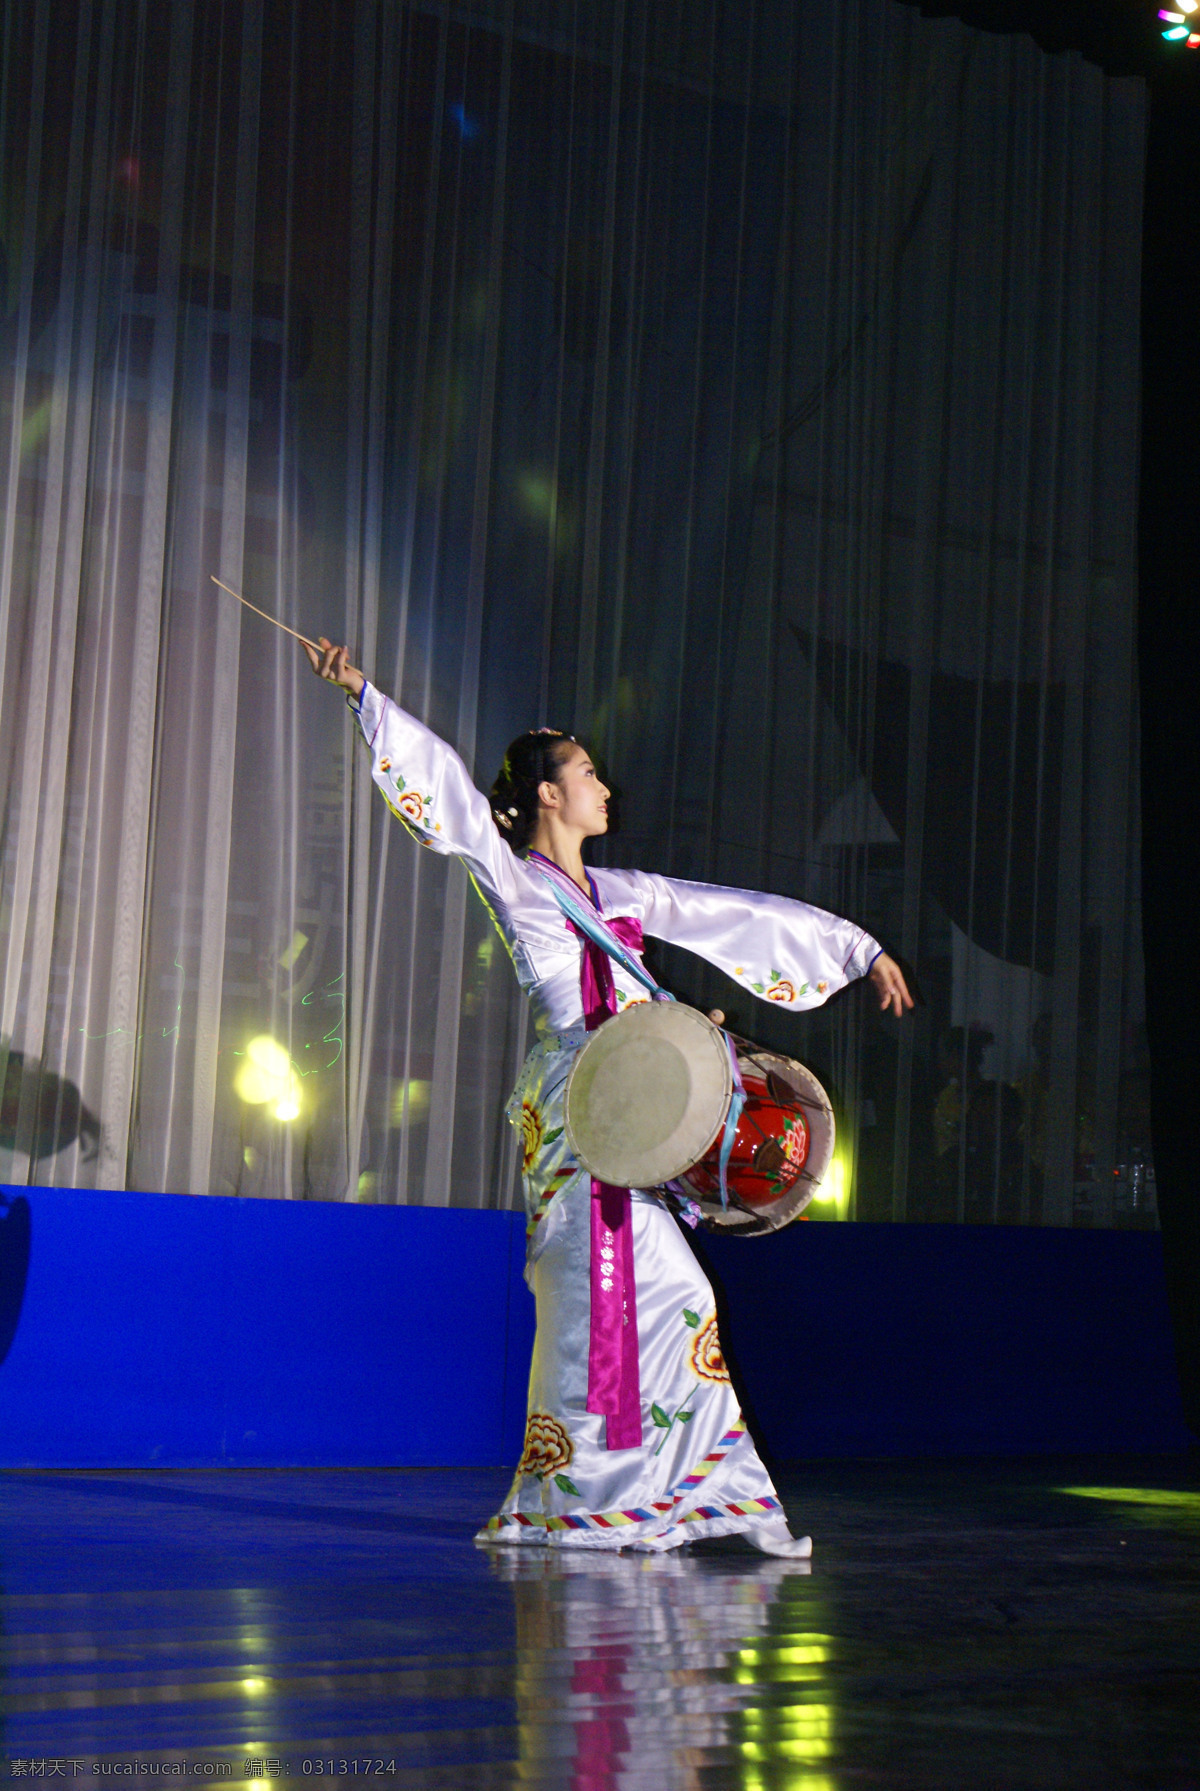 朝鲜族 长鼓舞 文化艺术 舞蹈 舞蹈音乐 朝鲜族长鼓舞 朝鲜族歌舞 psd源文件